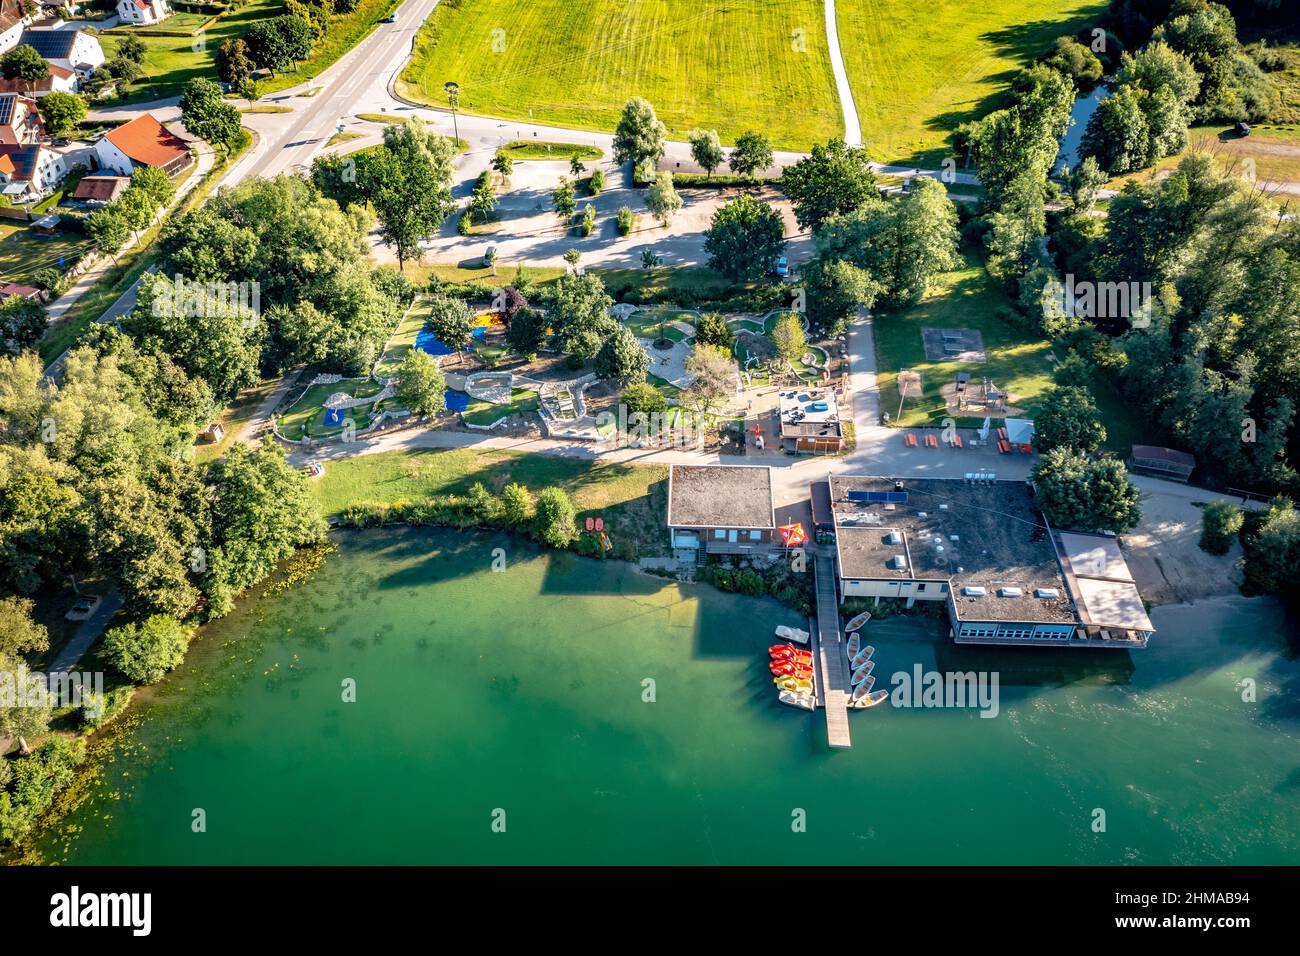 Luftbild von Bootshaus und Minigolfanlage im Naherholungsgebiet Kratzmühle, Naturpark Altmühltal, Bayern, Deutschland Stock Photo